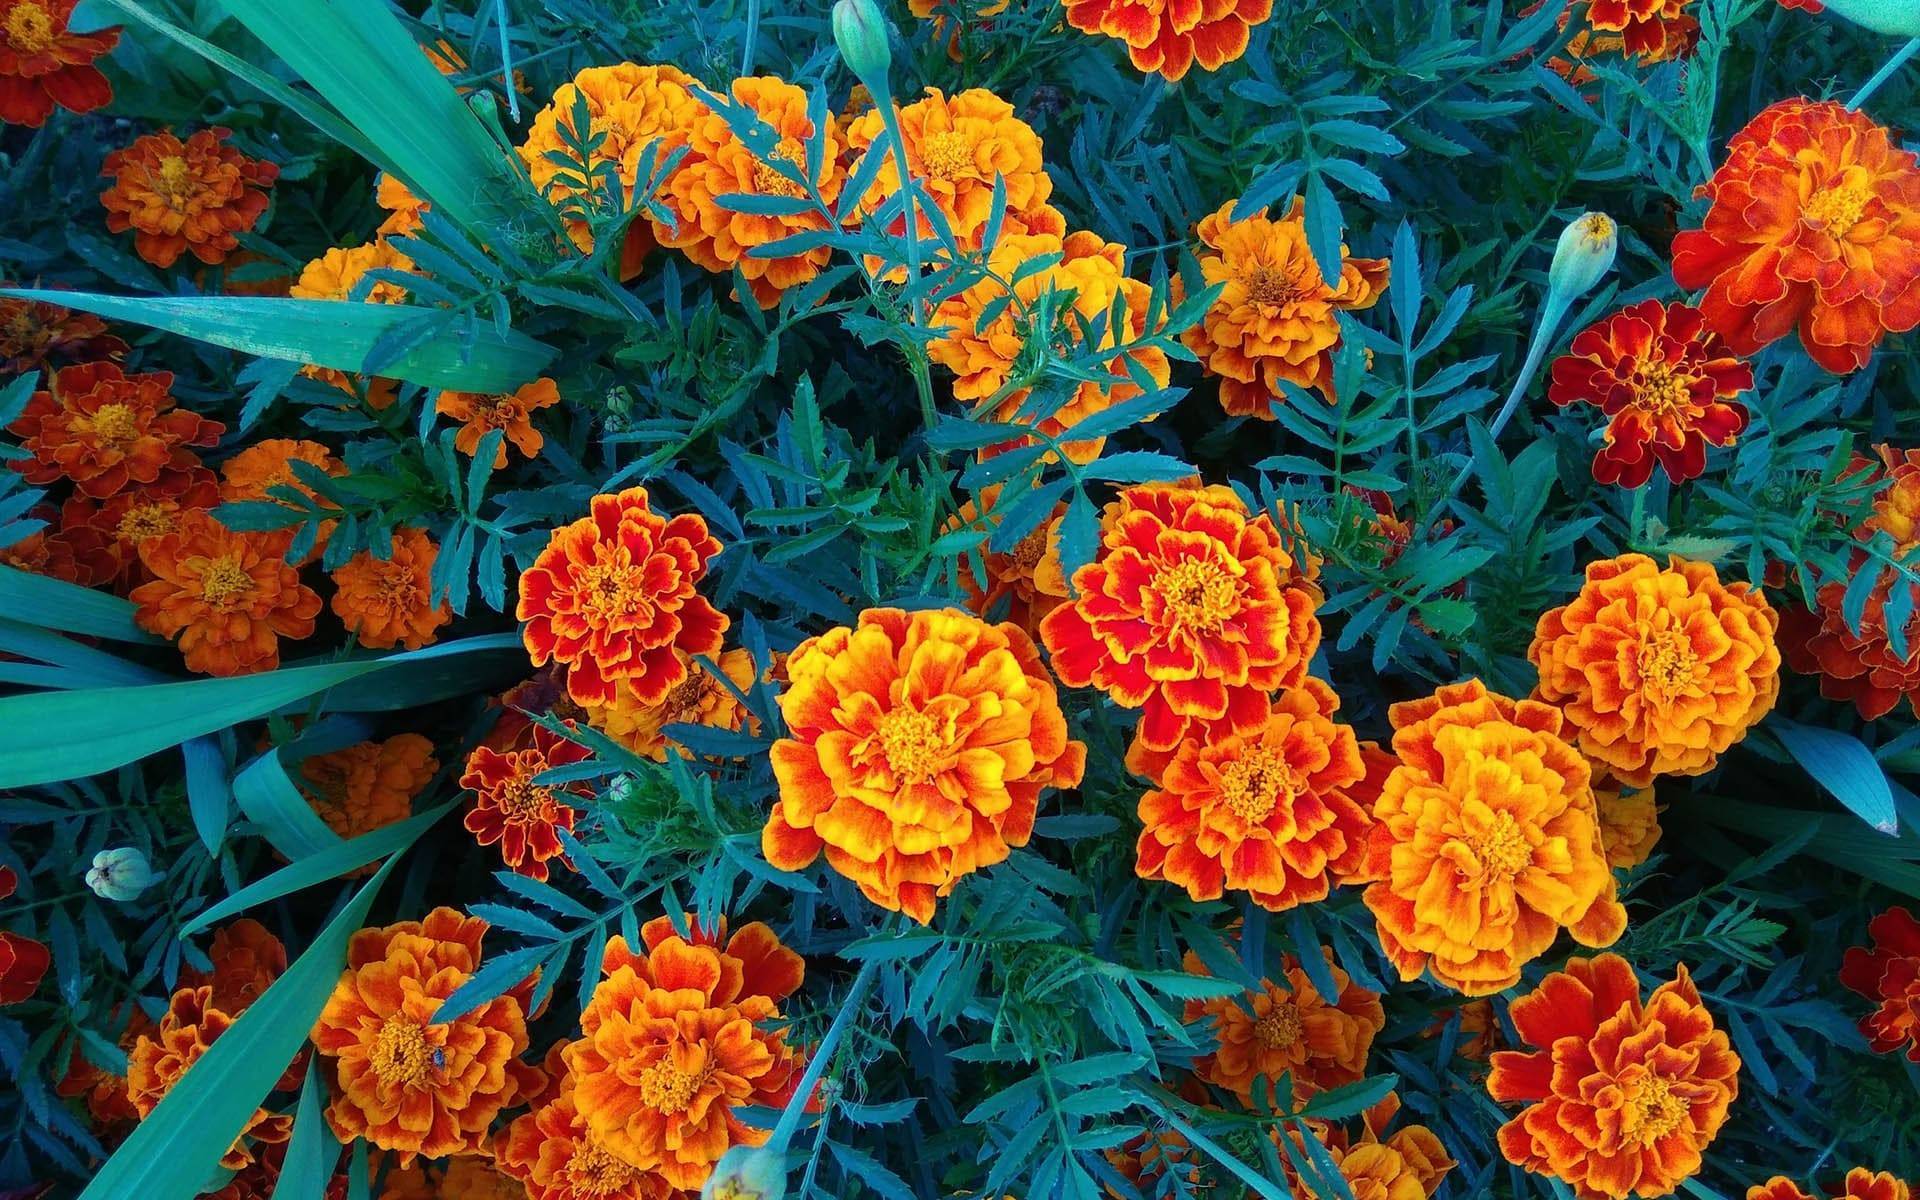 Как использовать бархатцы в ландшафтном дизайне: выращивание цветов и оформление клумб - 14 фото